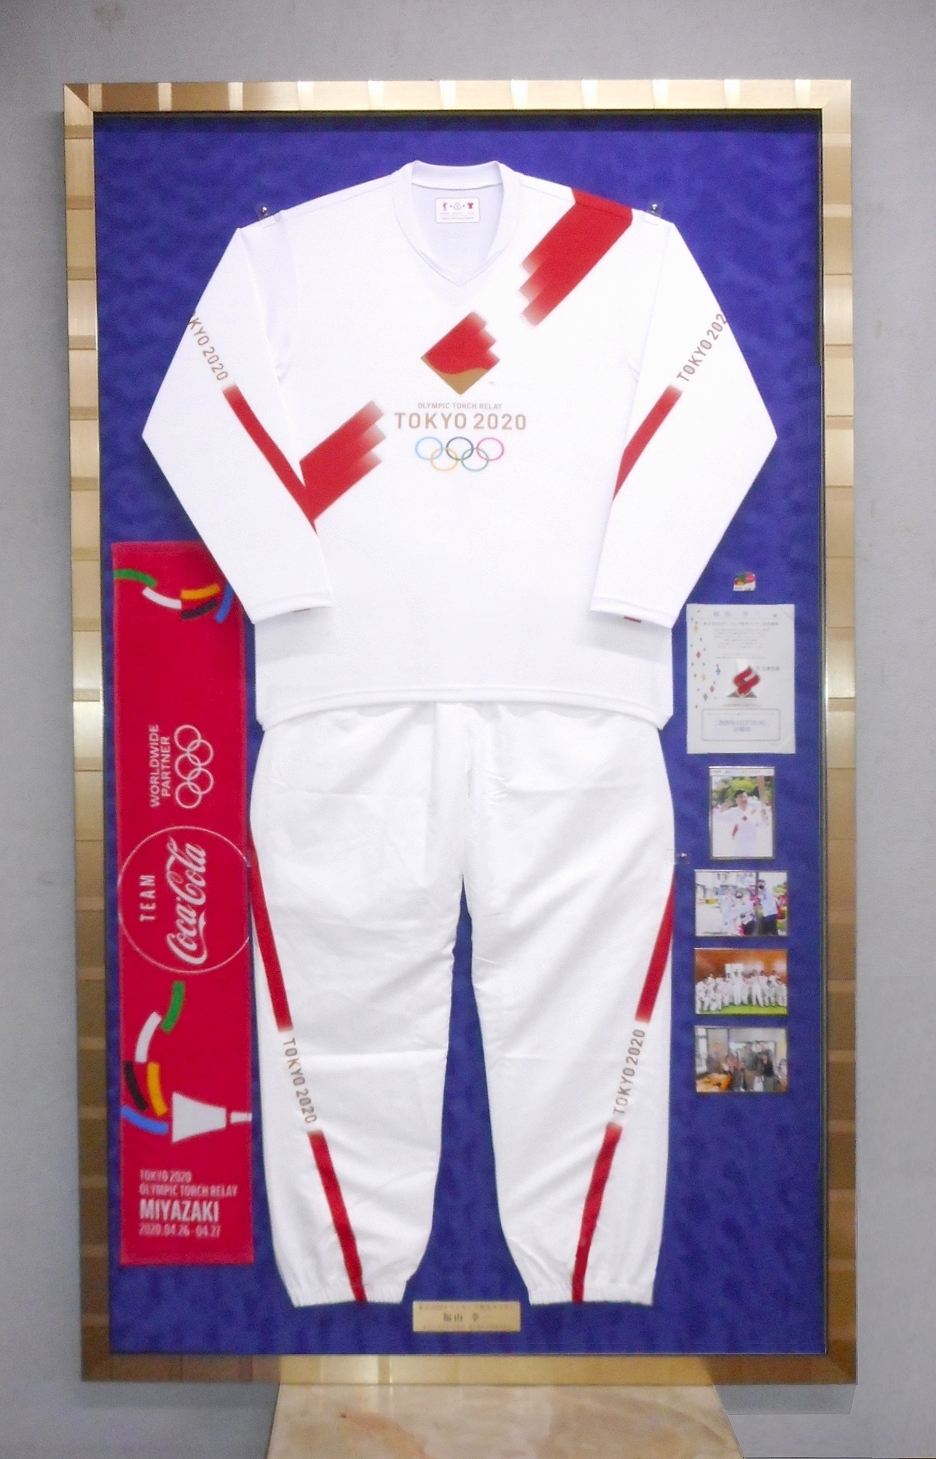 東京オリンピック・パラリンピック 2020 聖火ランナーユニフォーム